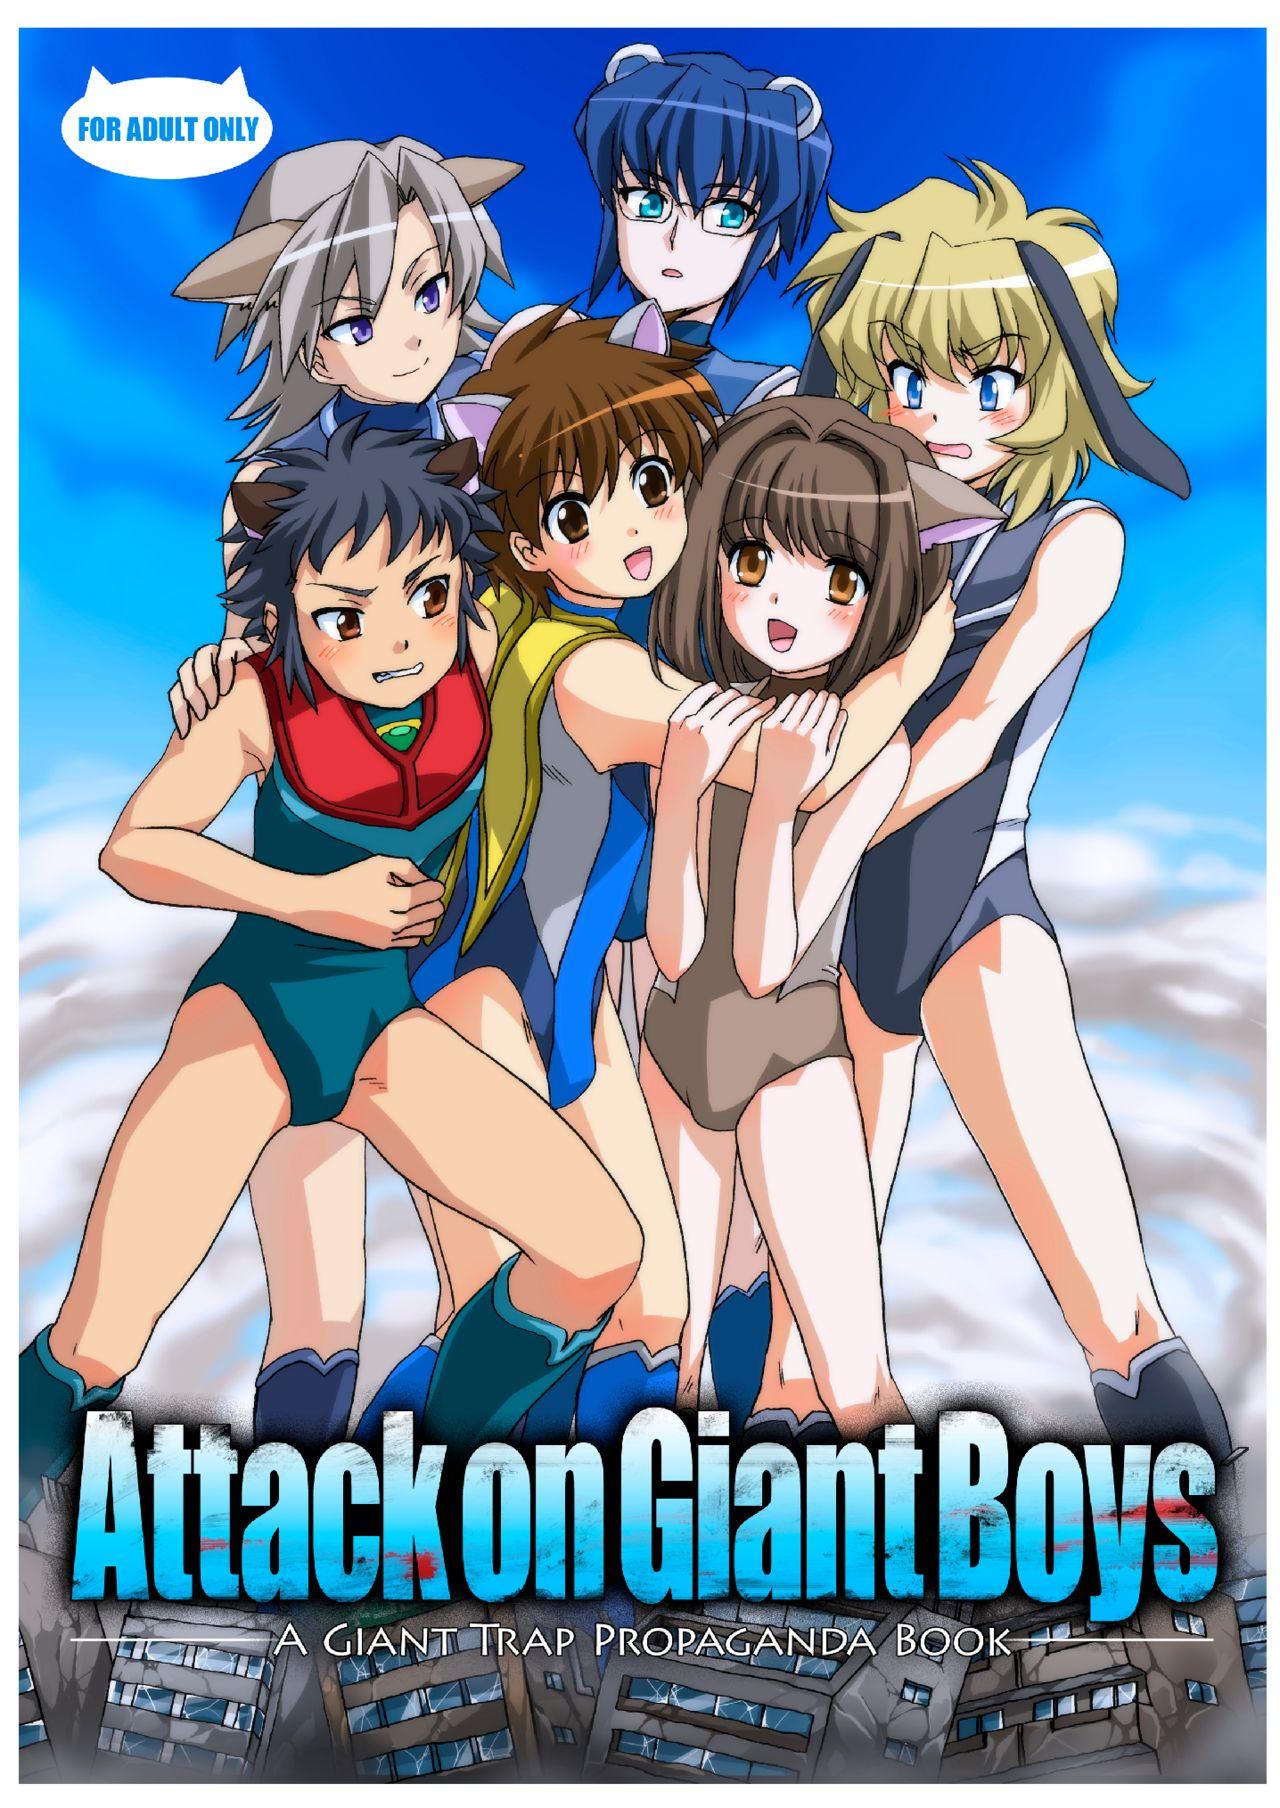 Shingeki no Kyodai Shounens | ATTACK ON GIANT BOYS 0